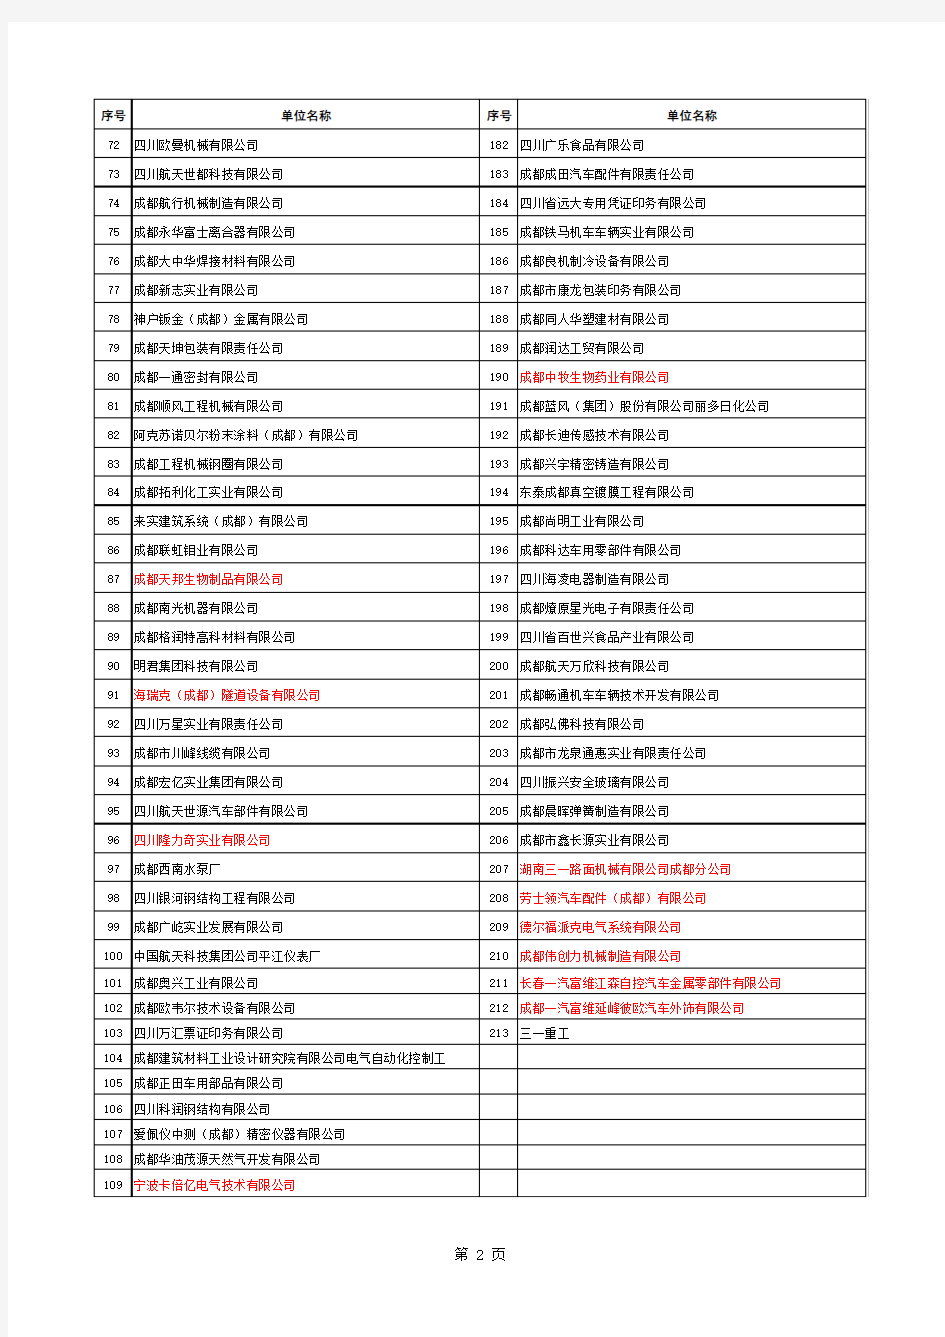 最新成都市龙泉驿区全部企业名单